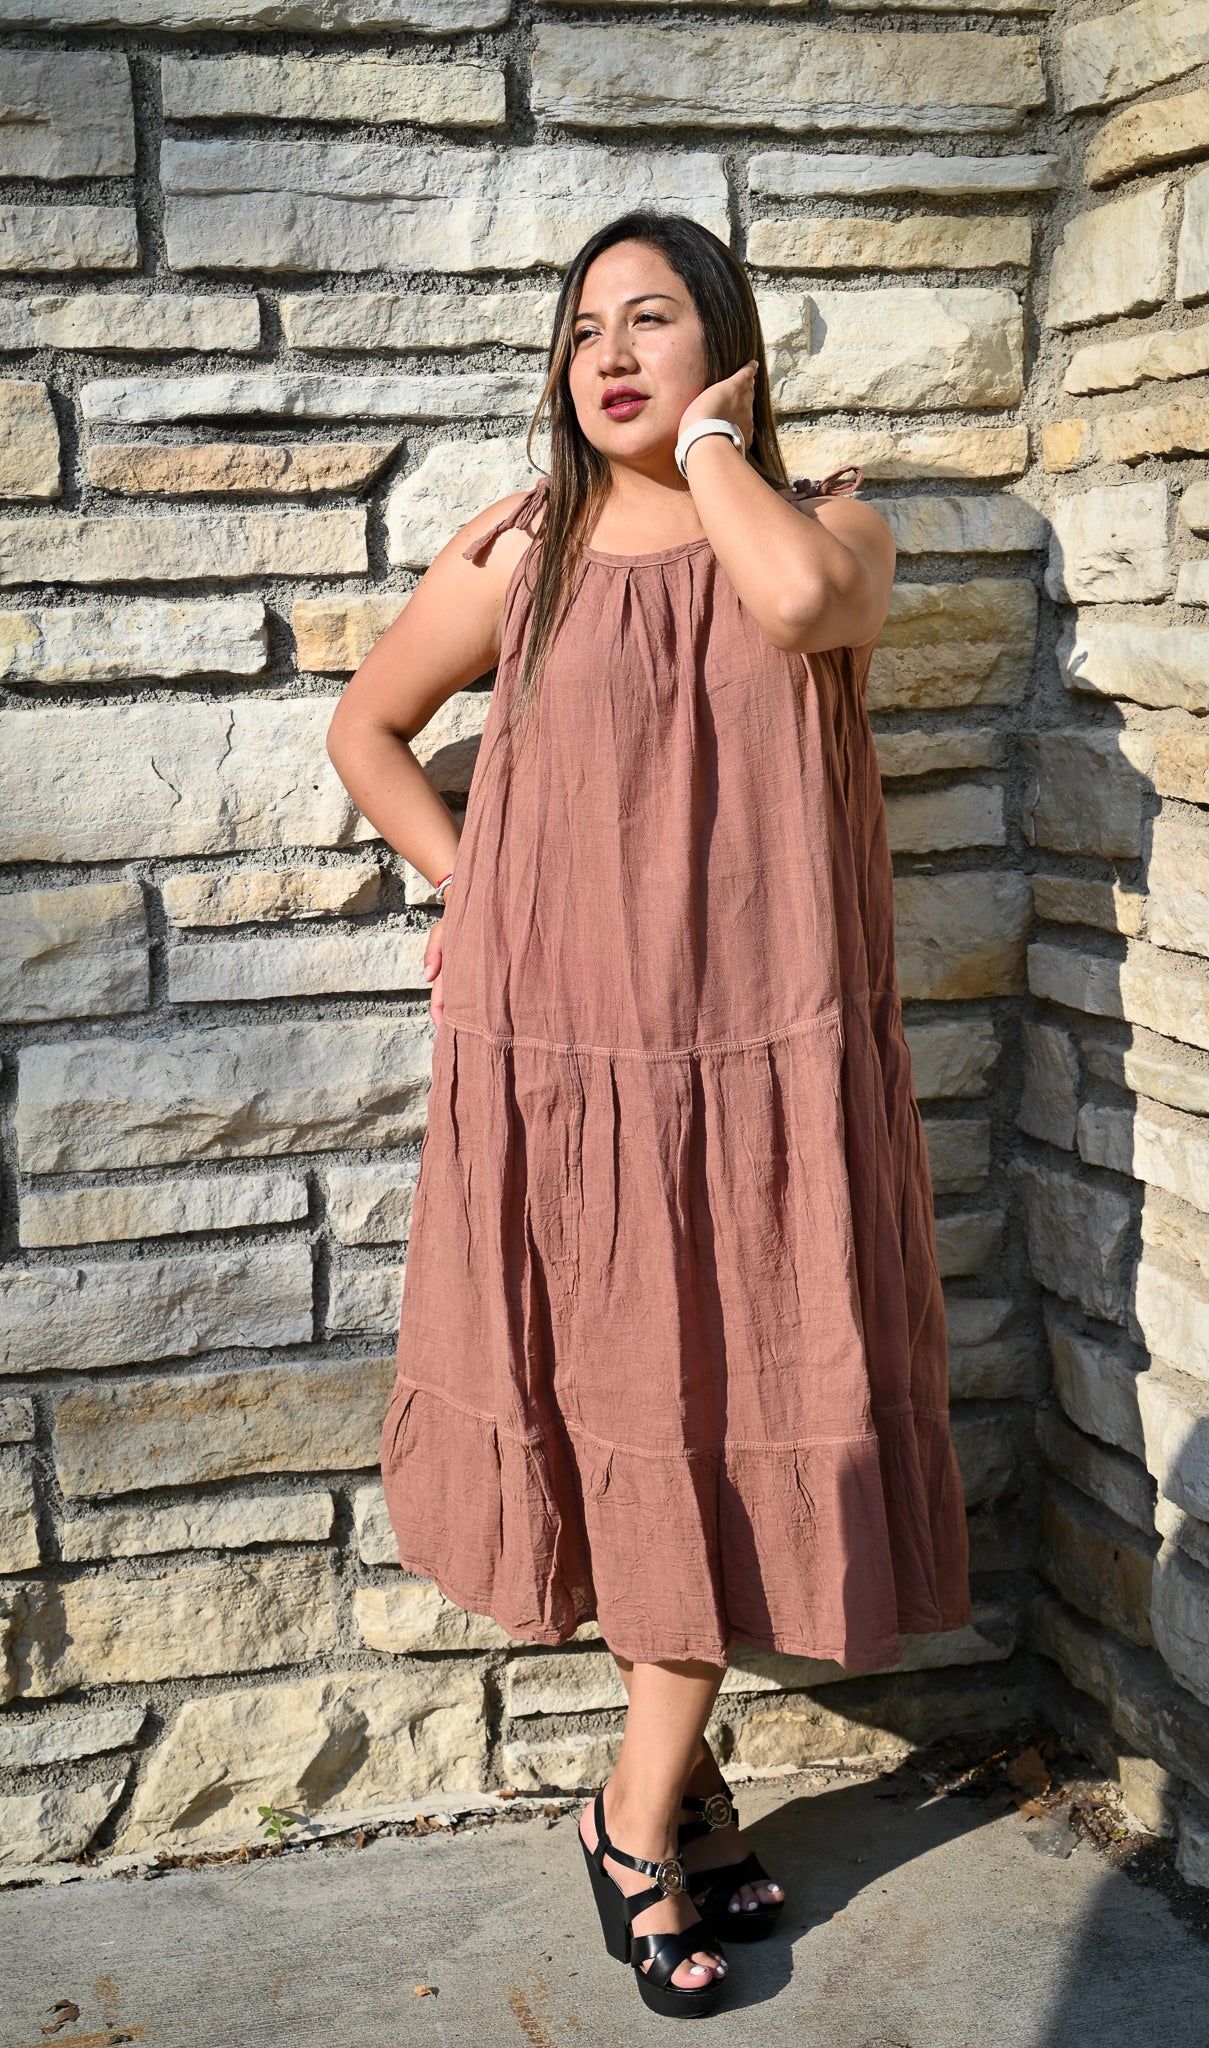 Earth Goddess Cotton Summer dress - 100% cotton dress - Summer cotton dress